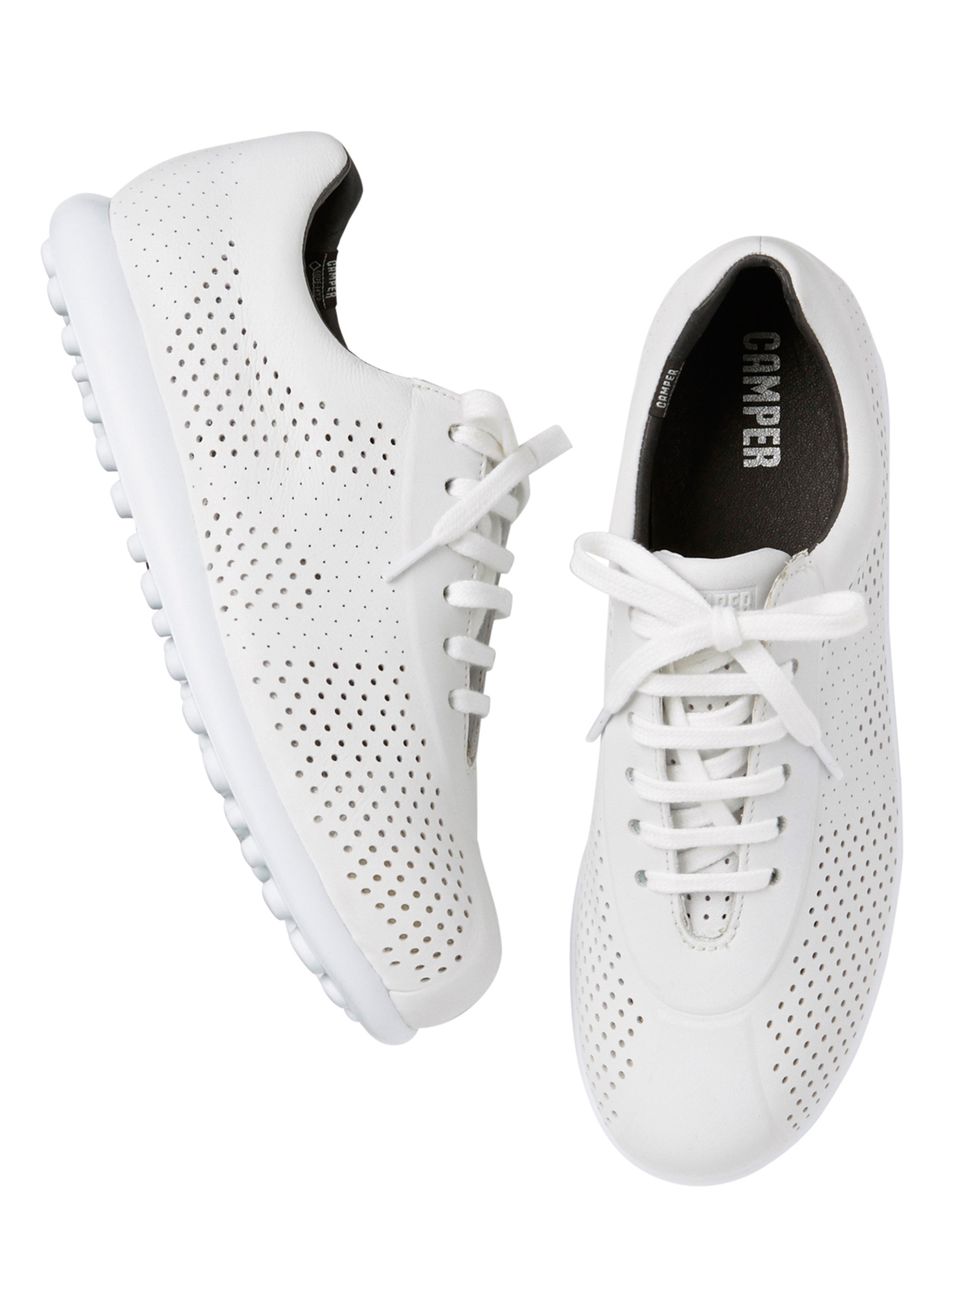 Shoe, Footwear, White, Sneakers, Product, Plimsoll shoe, Walking shoe, Athletic shoe, Tennis shoe, Sportswear, 